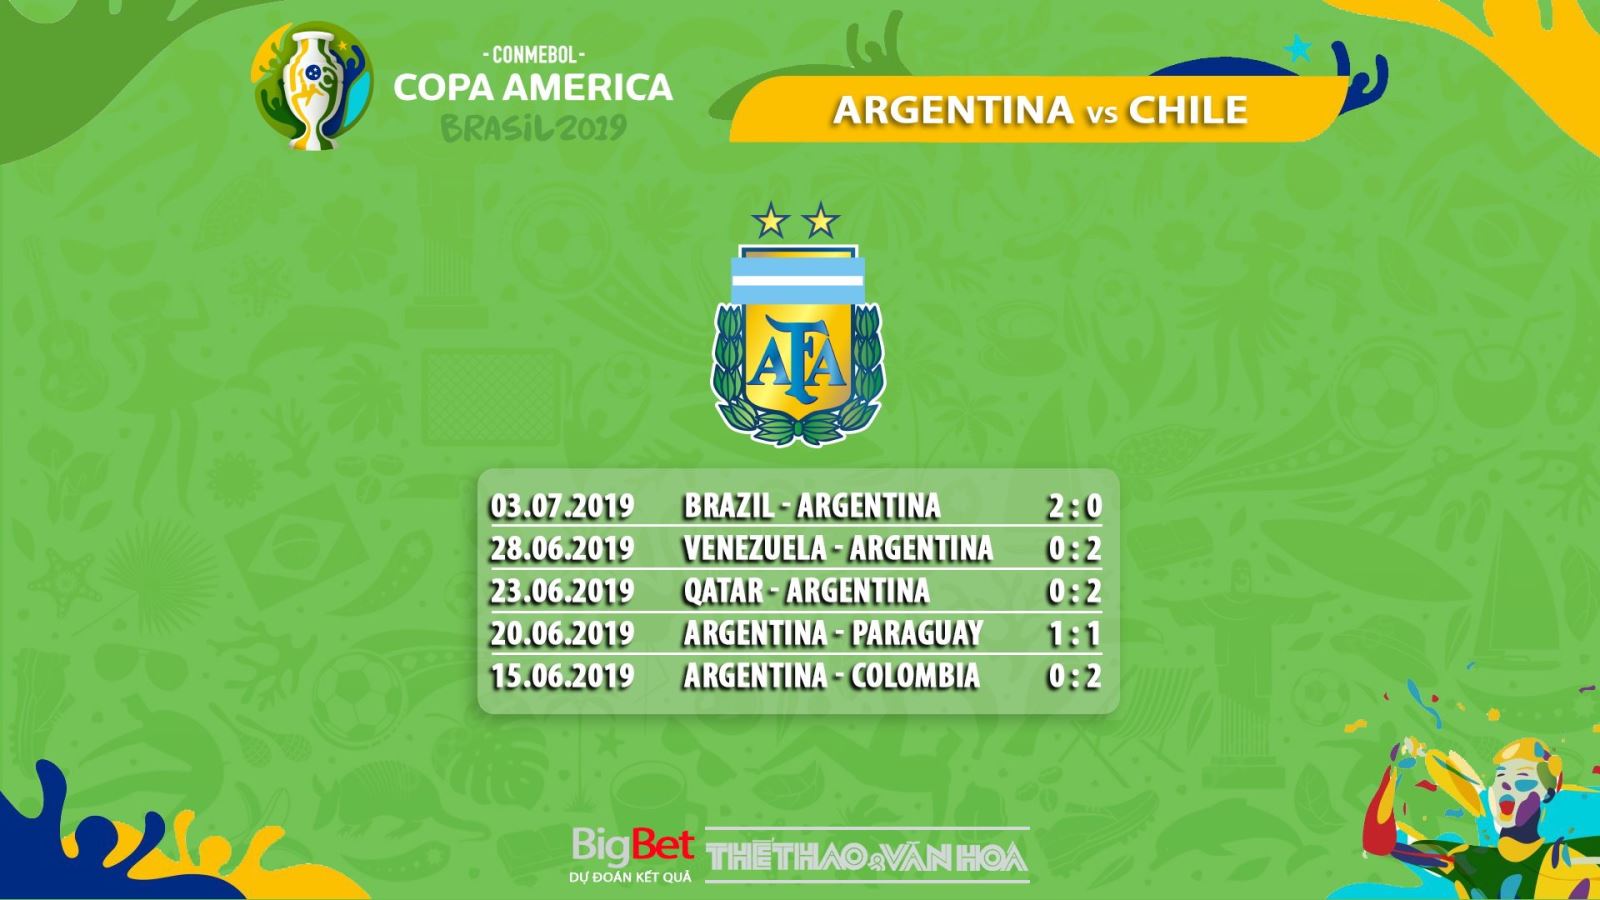 trực tiếp bóng đá, soi kèo Argentina vs Chile, trực tiếp bóng đá hôm nay, Argentina đấu với Chile, truc tiep bong da, Argentina vs Chile, kèo bóng đá, Copa America 2019